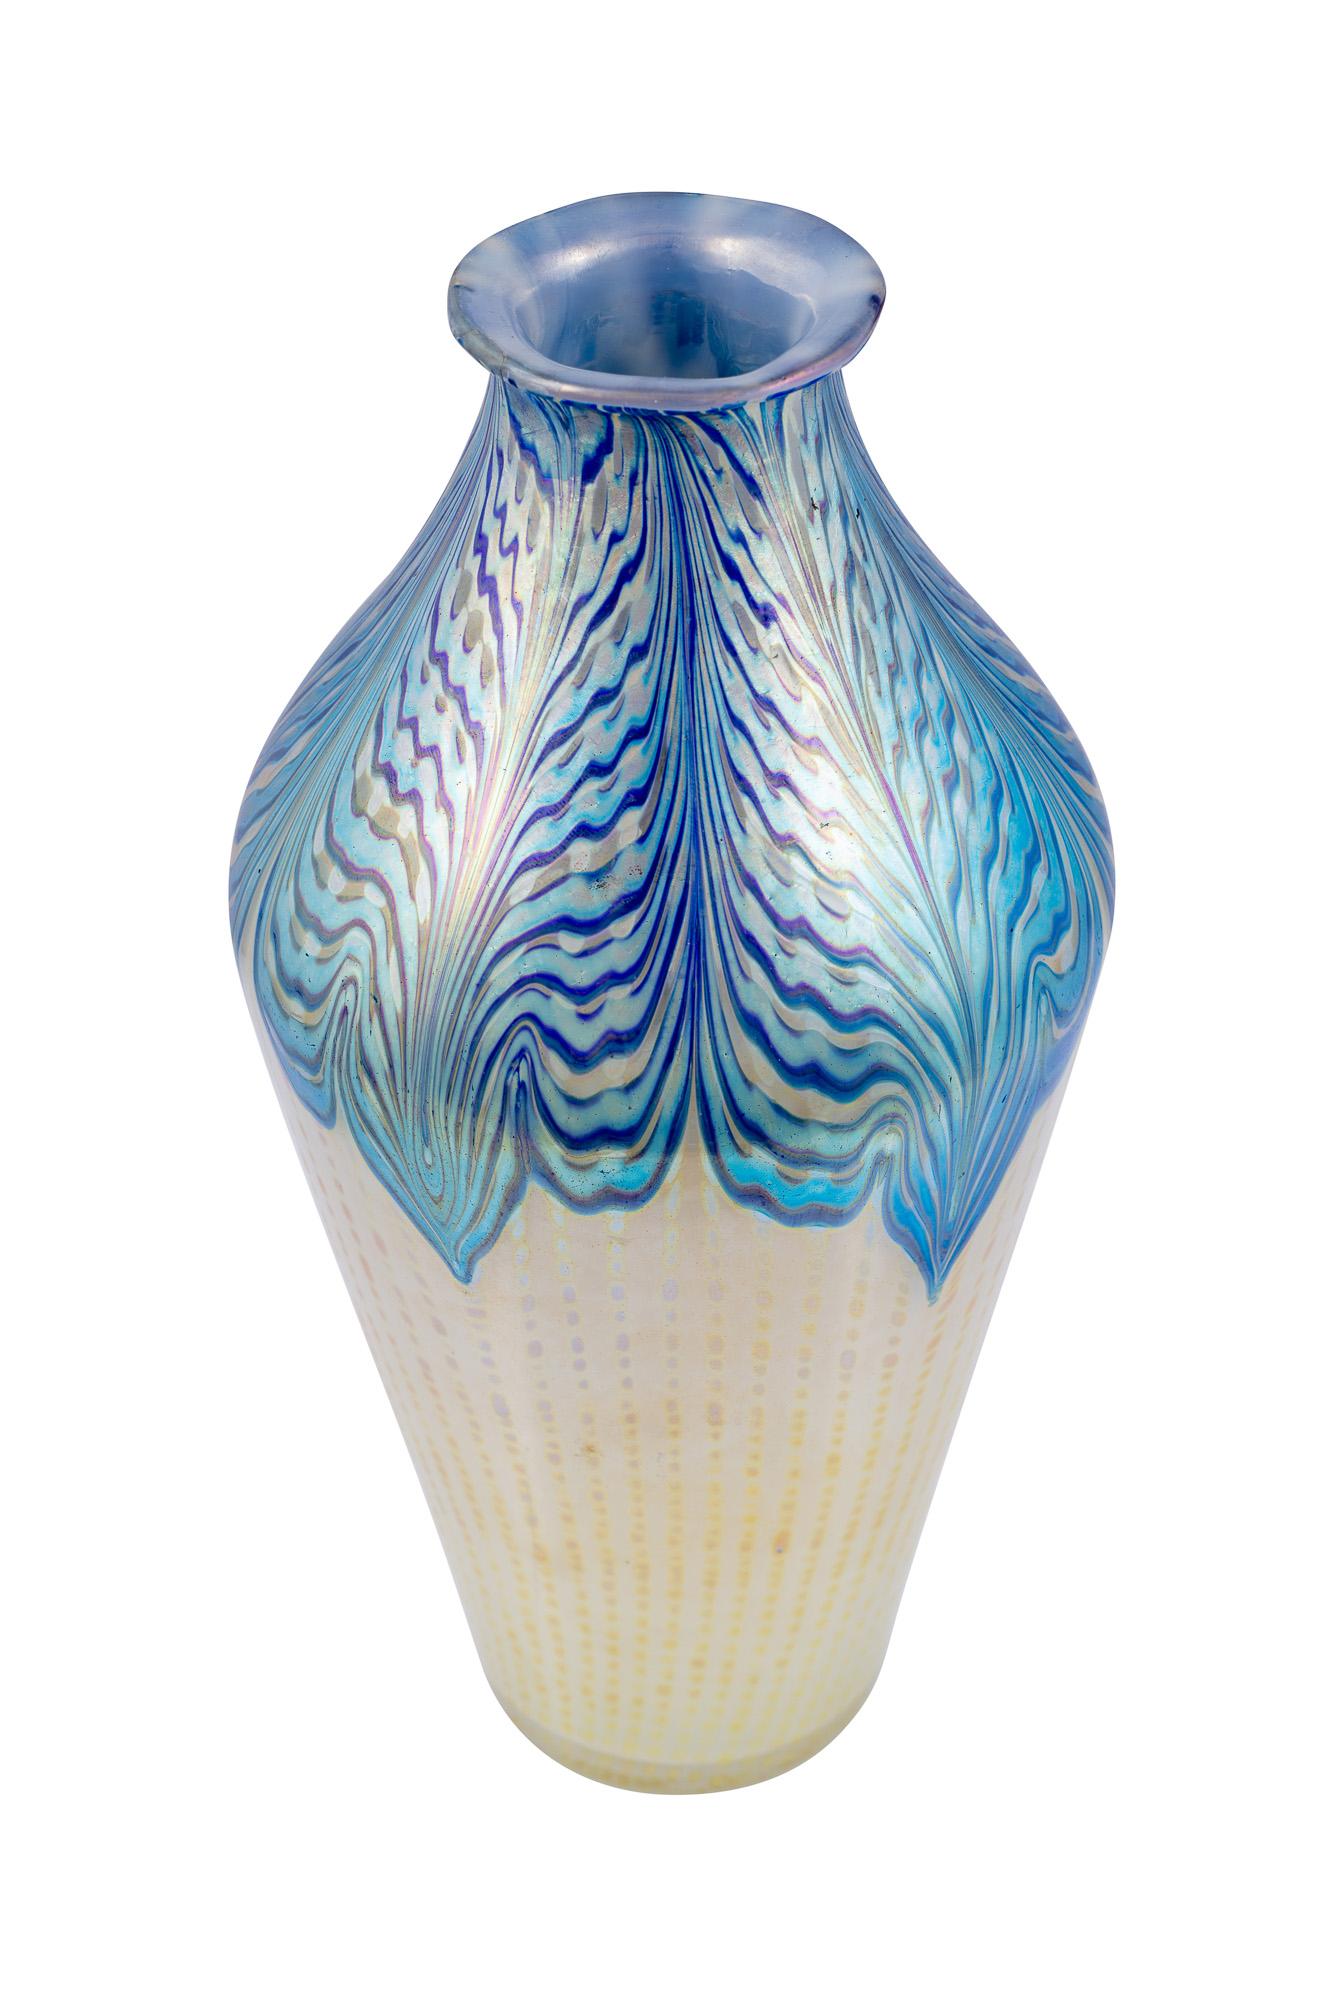 Art Nouveau Large Vase Loetz Decor Phenomen Genre 2/187, circa 1902